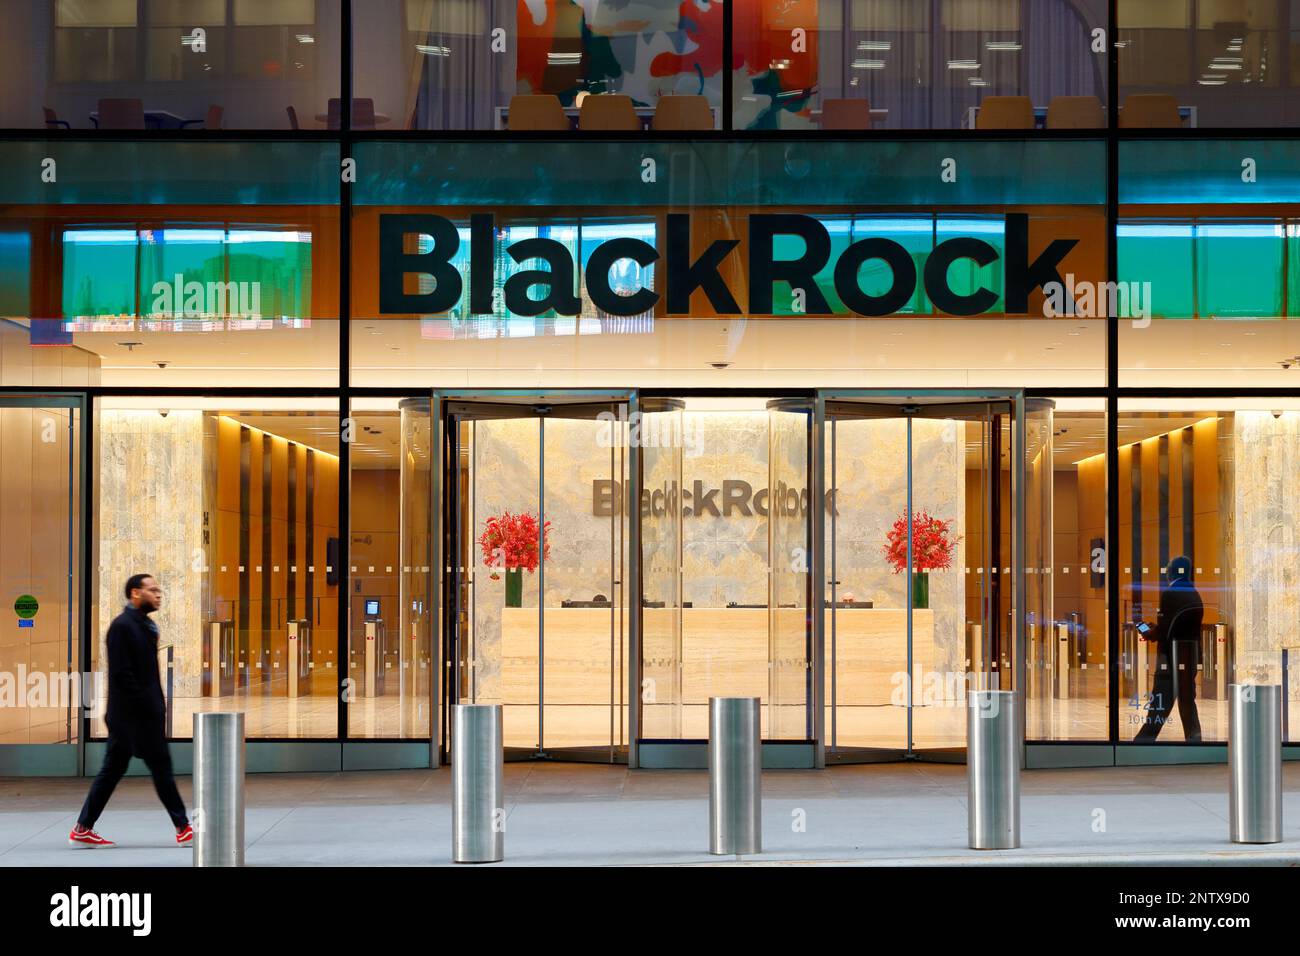 Siège social de BlackRock, 50 Hudson yards, New York. Il s'agit d'une société de gestion d'actifs, d'investissement. Banque D'Images